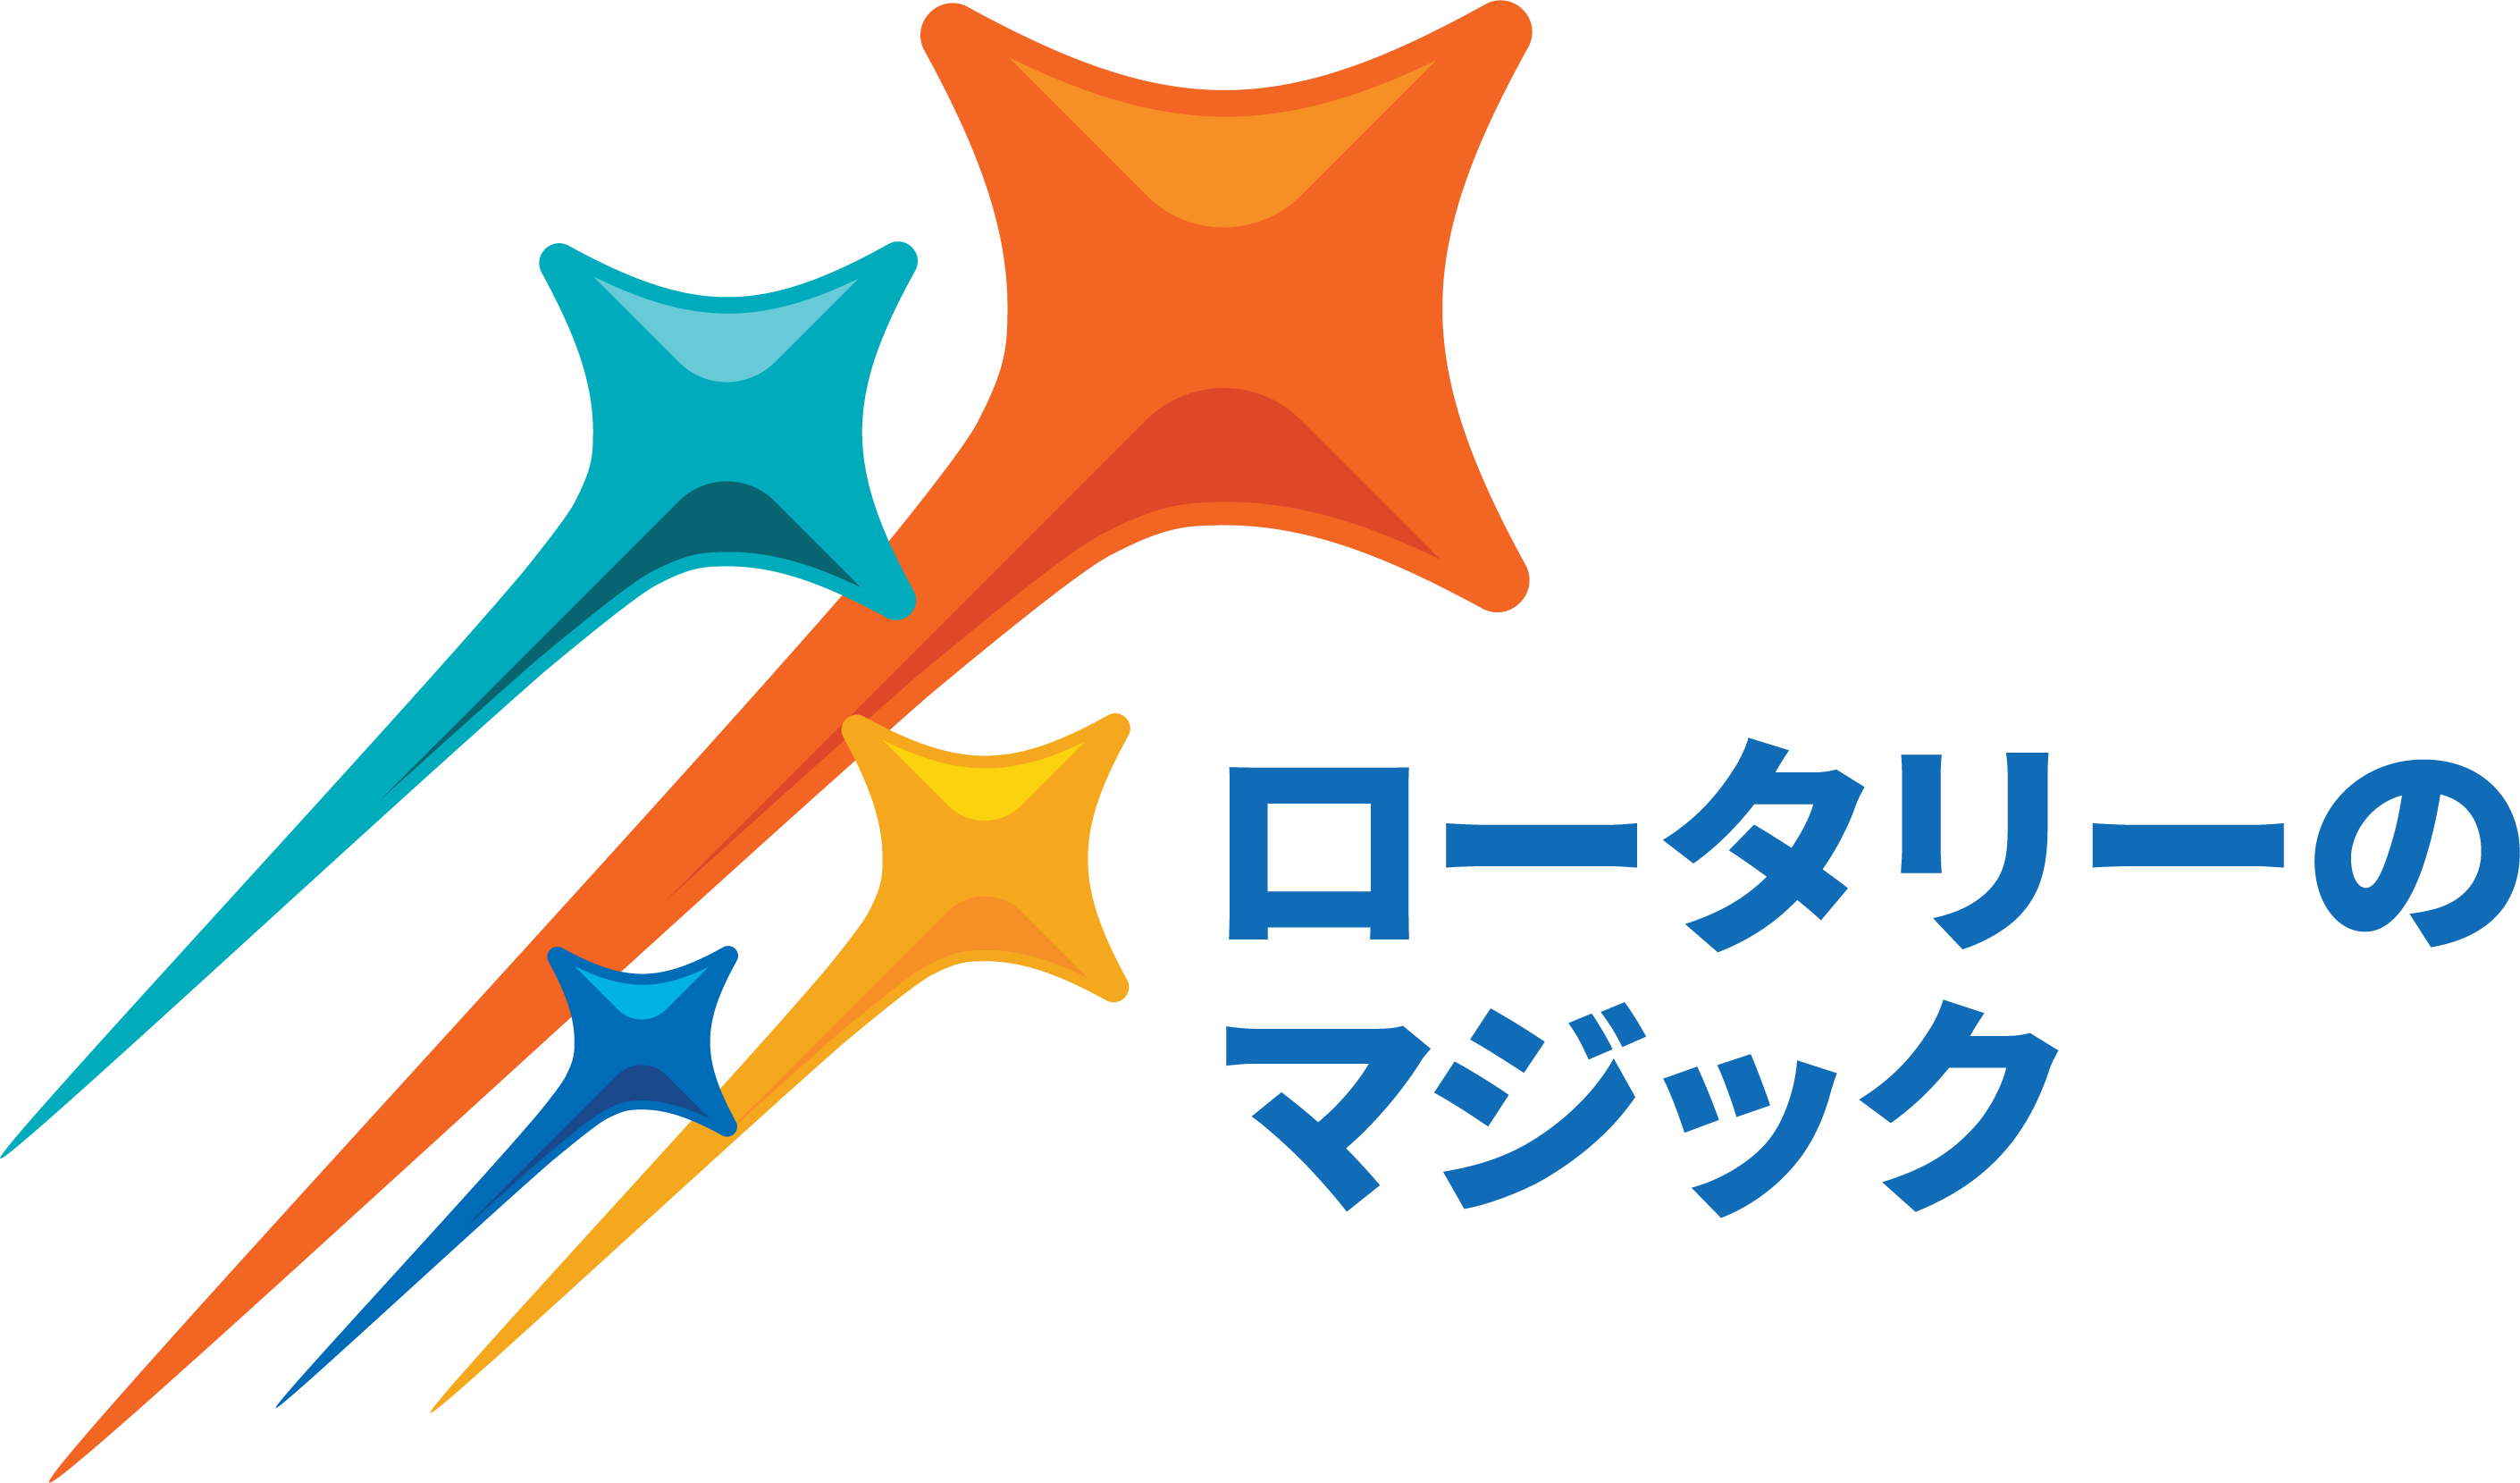 2024-2025 Presidential theme logo 